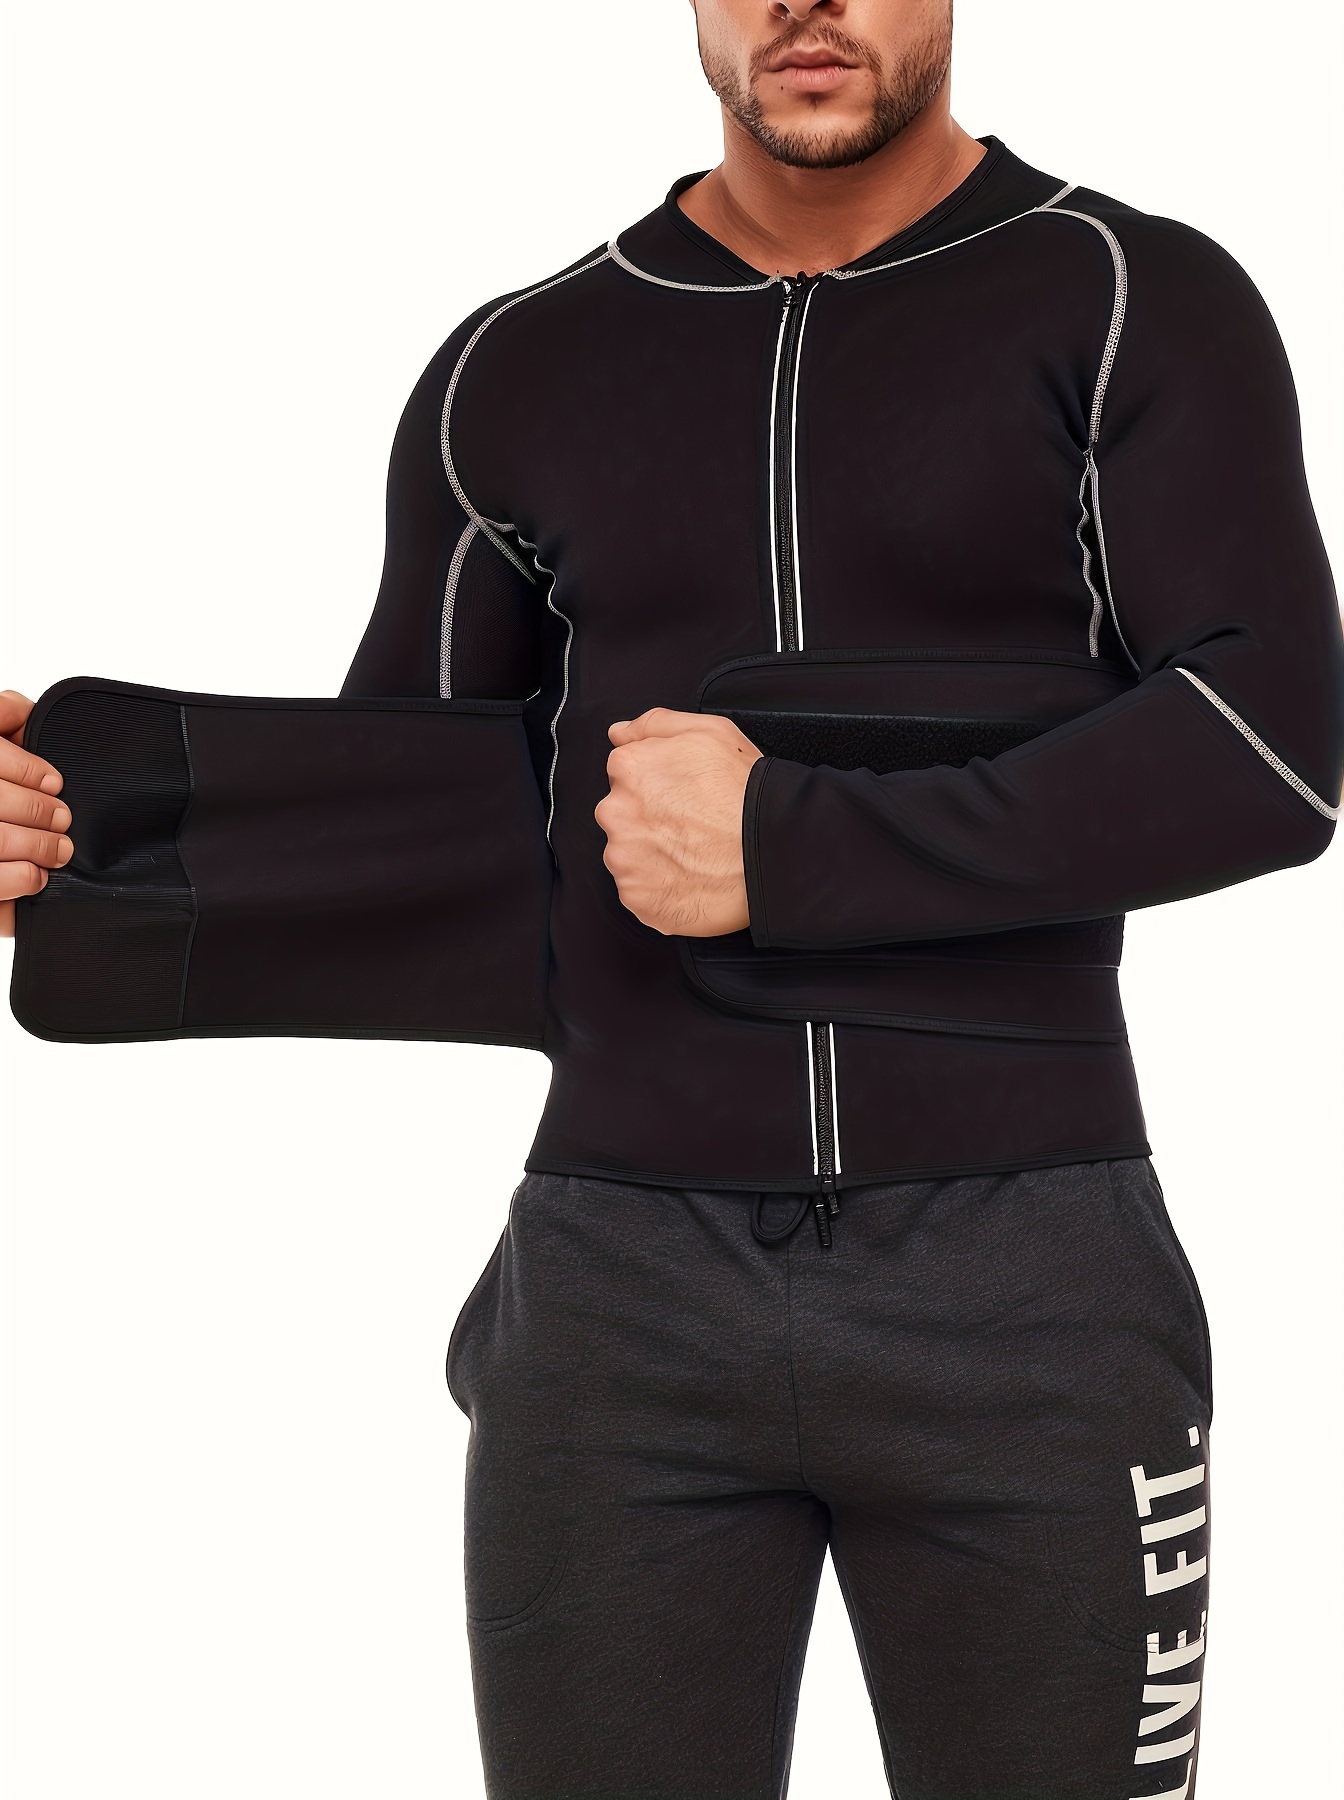  Women Sauna Suit Workout Jacket Hot Sweat Shirt Body Shaper  Waist Trainer Fitness Top Long Sleeve Neoprene Zipper : Sports & Outdoors